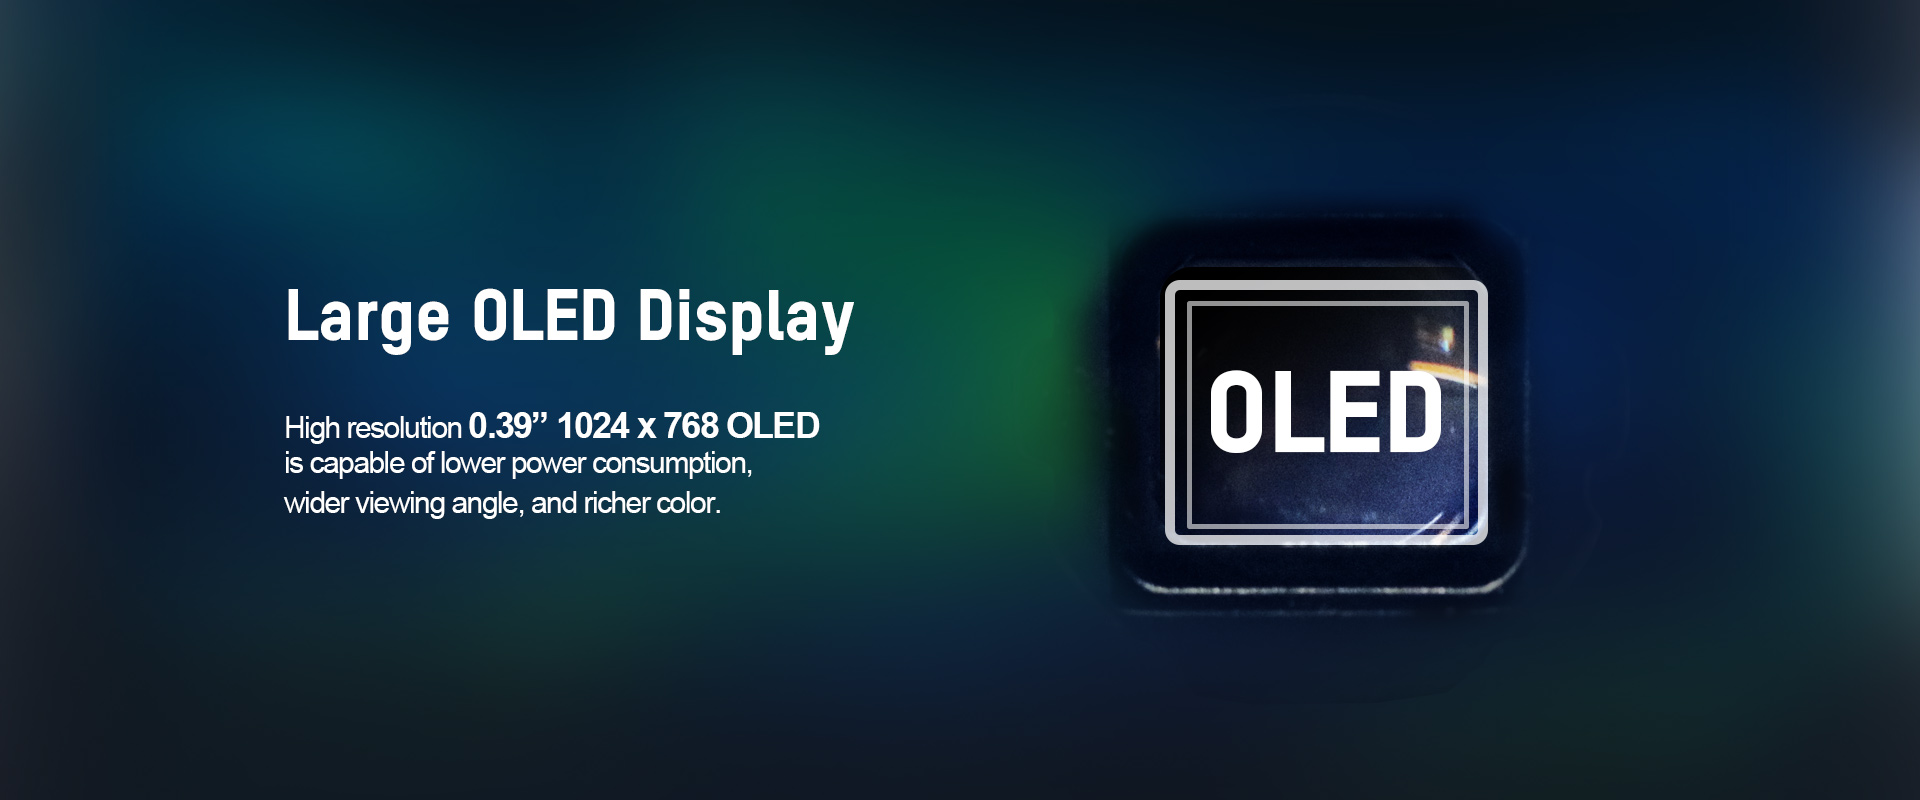 02-Large OLED Display_THUNDERScope.jpg